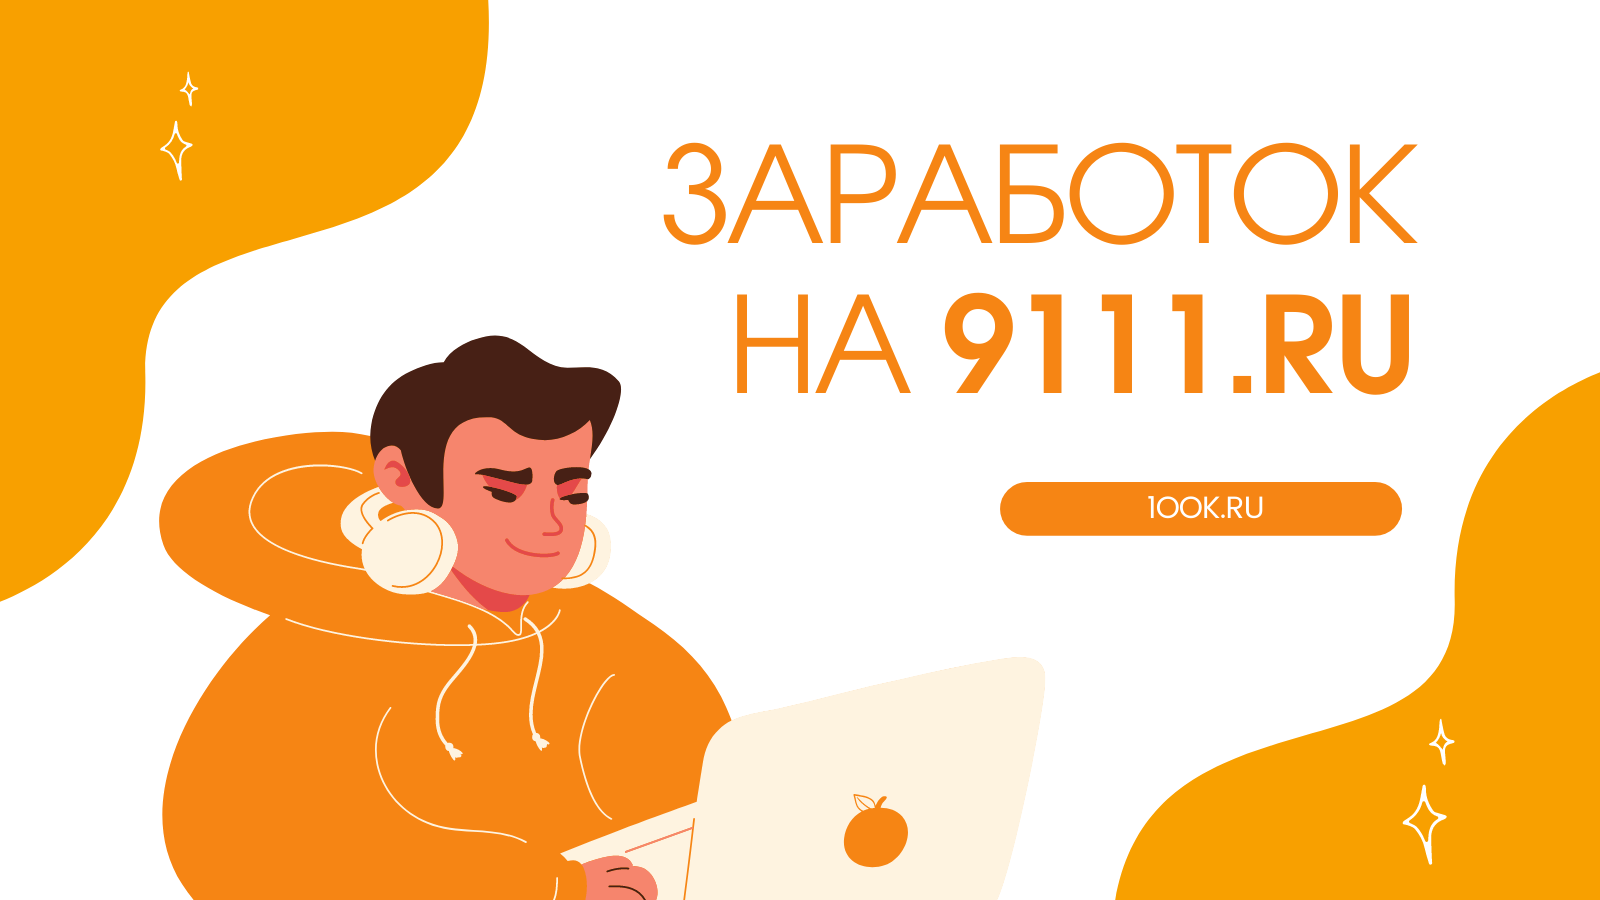 Как начать зарабатывать на юридической социальной сети 9111.ru?